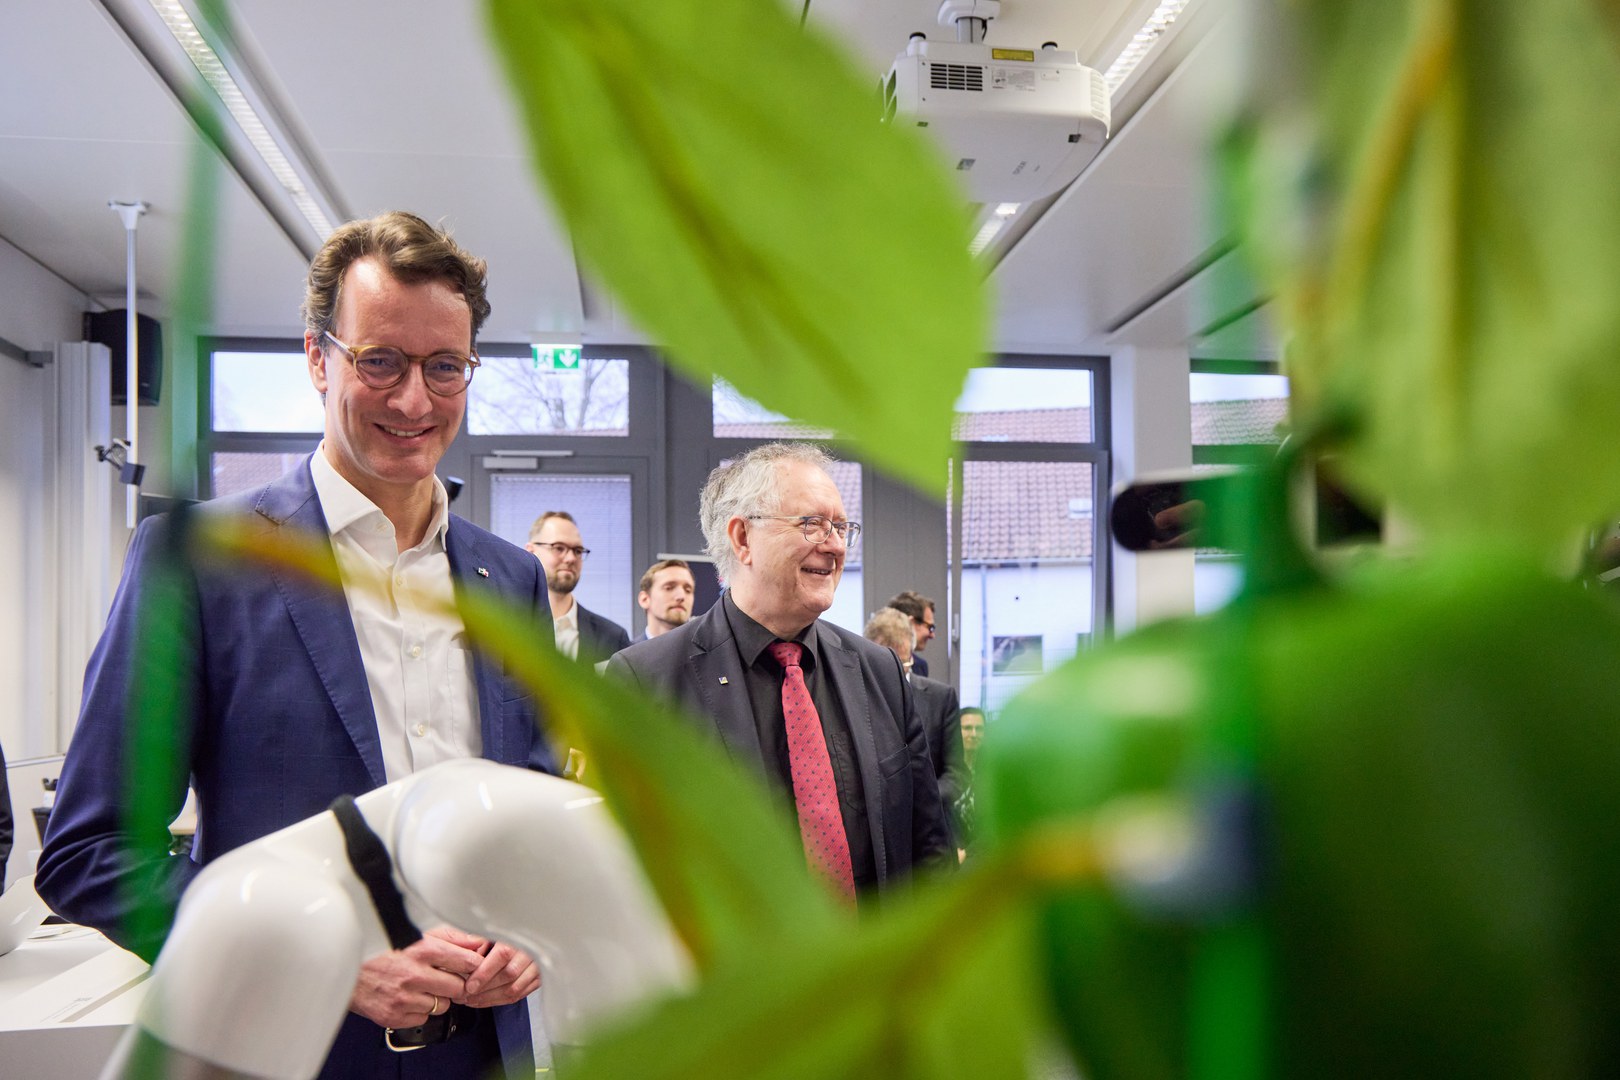 NRW-Ministerpräsident Wüst besucht Humanoid Robots Lab der Uni Bonn.